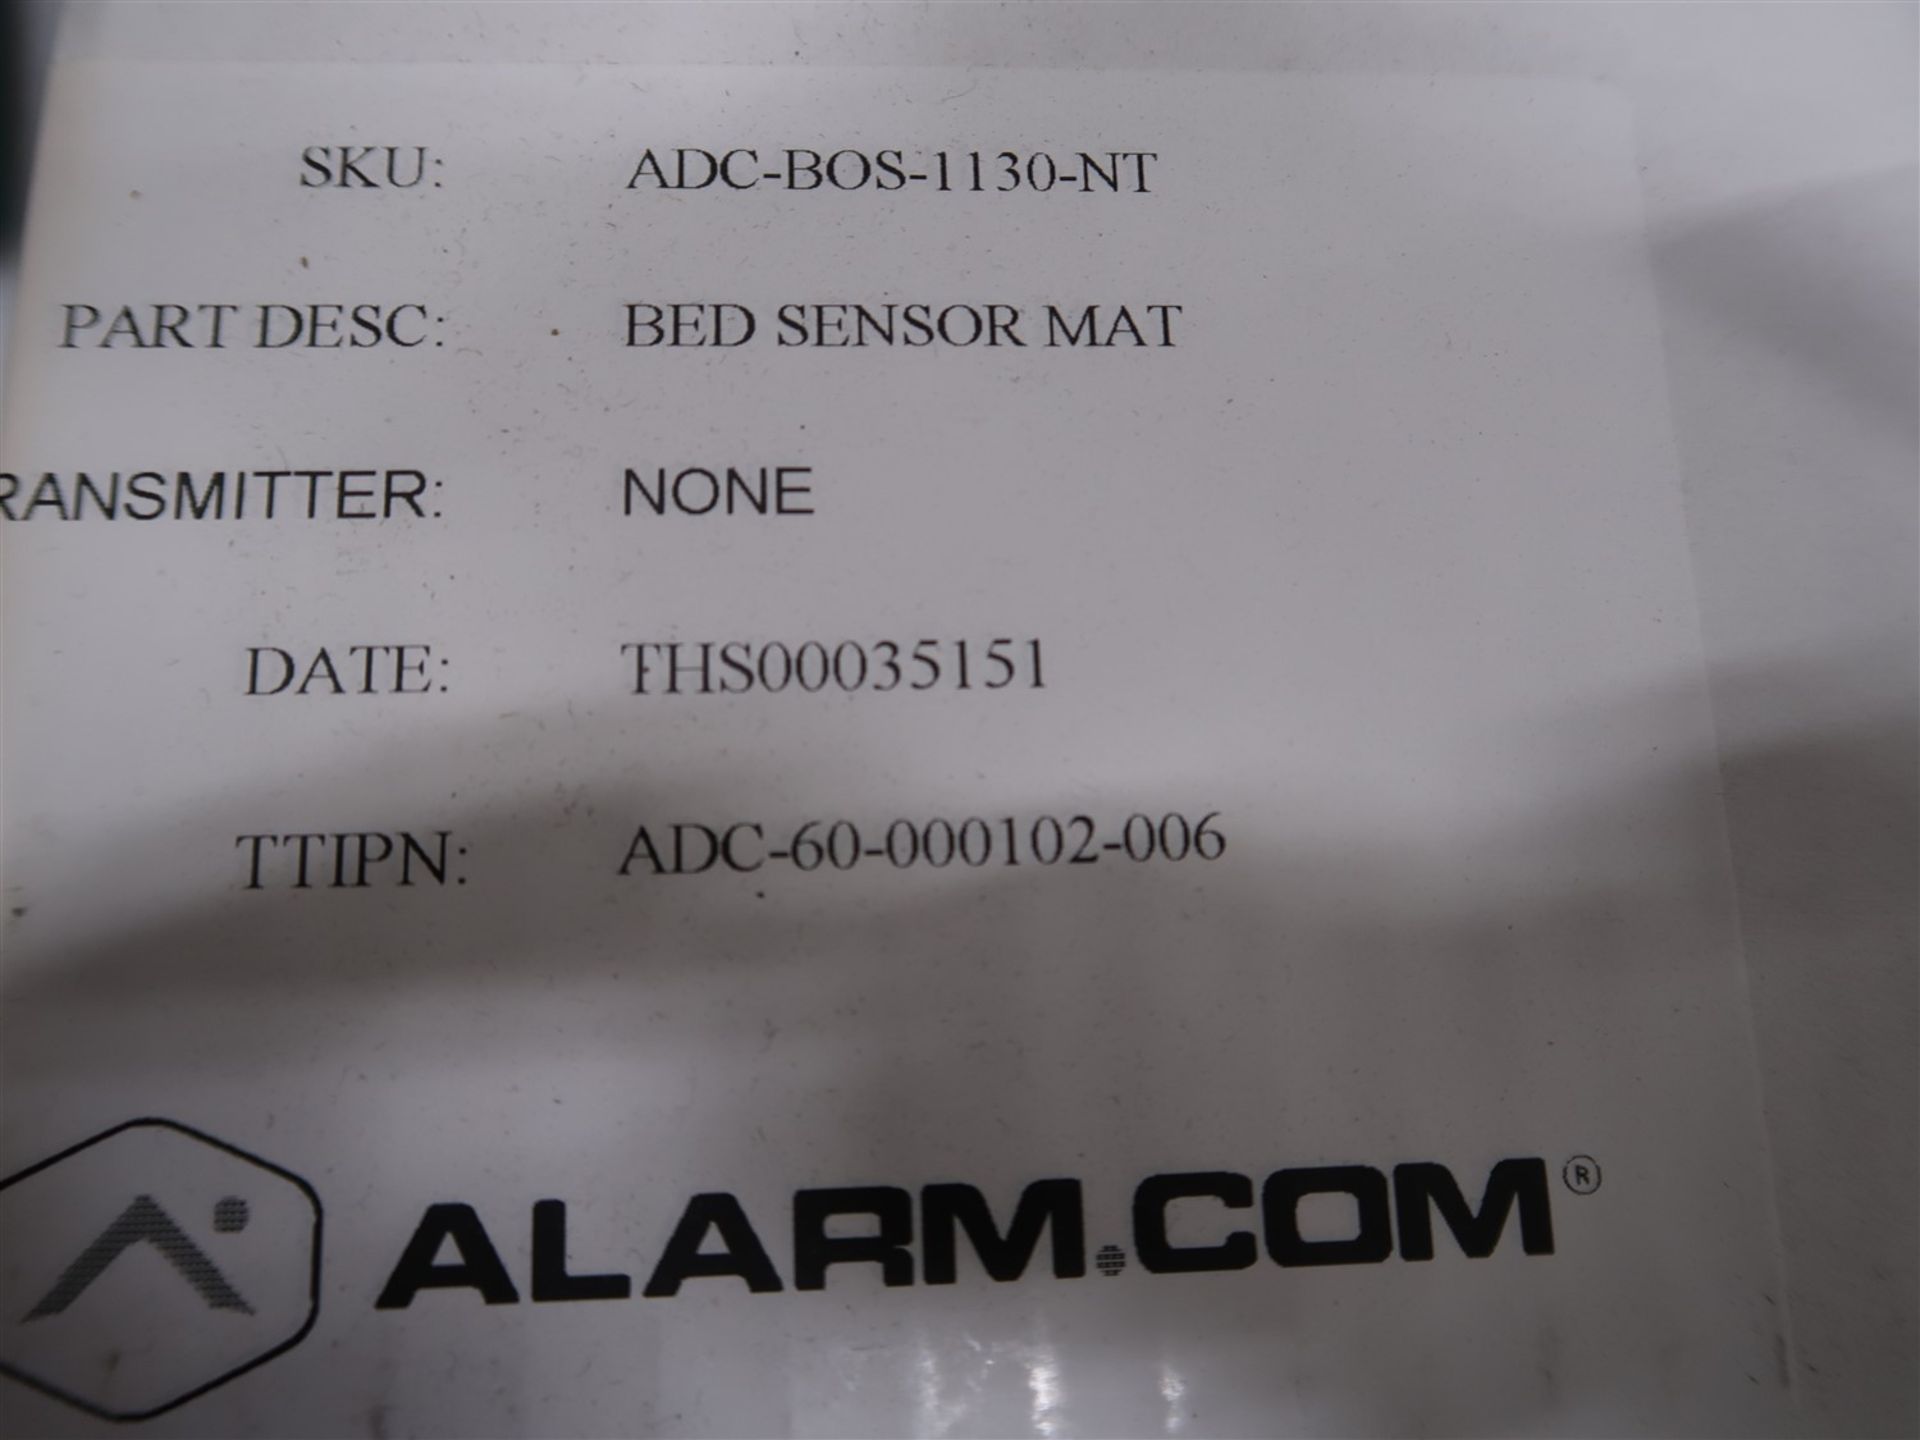 ALARM.COM BED SENSOR MAT PART #ADC-BOS-1130-NT (BNIB) - Image 2 of 2